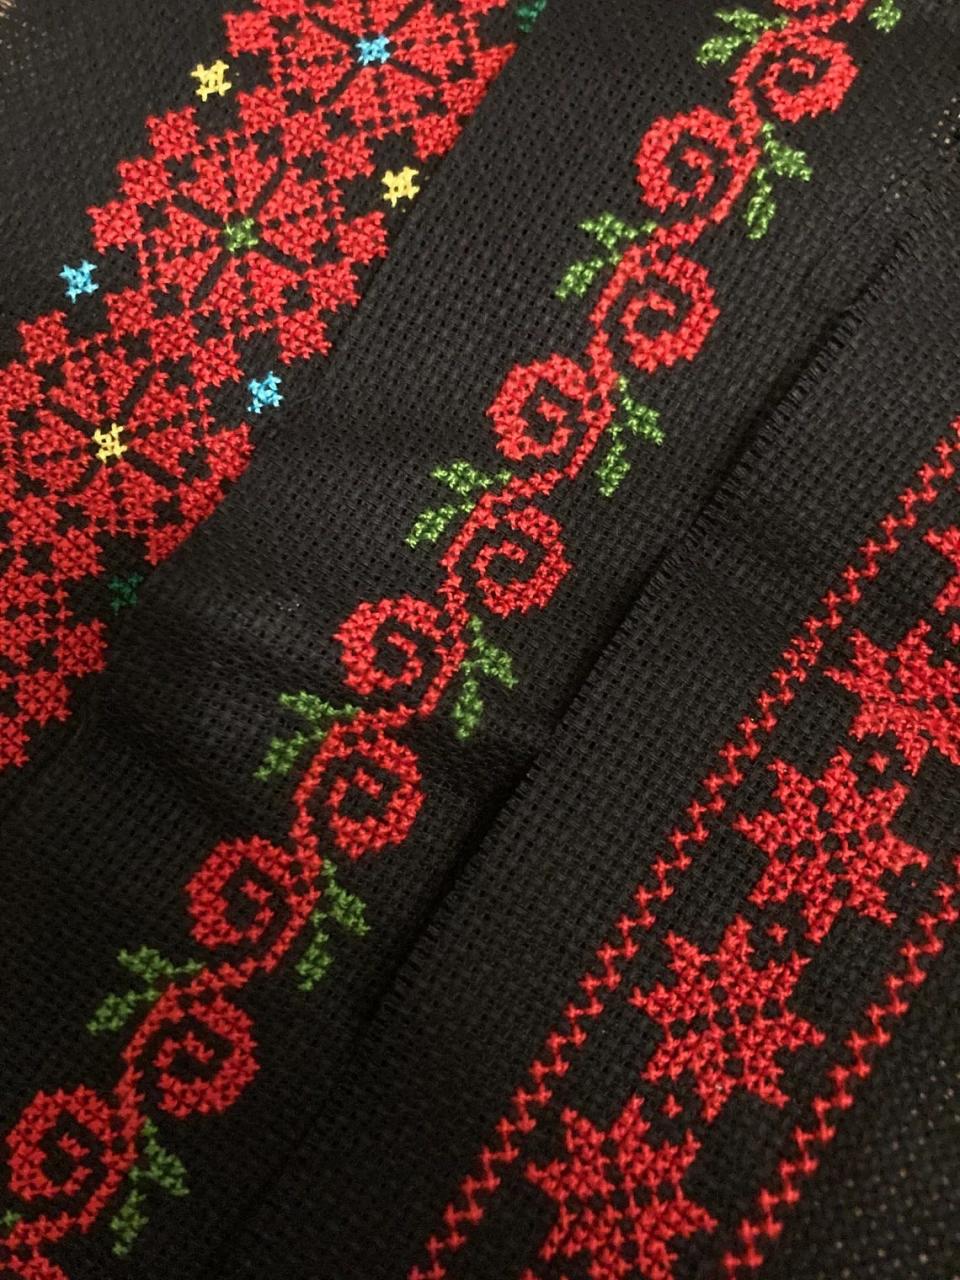 Balady Stitch features traditional Palestinian cross-stitch patterns.